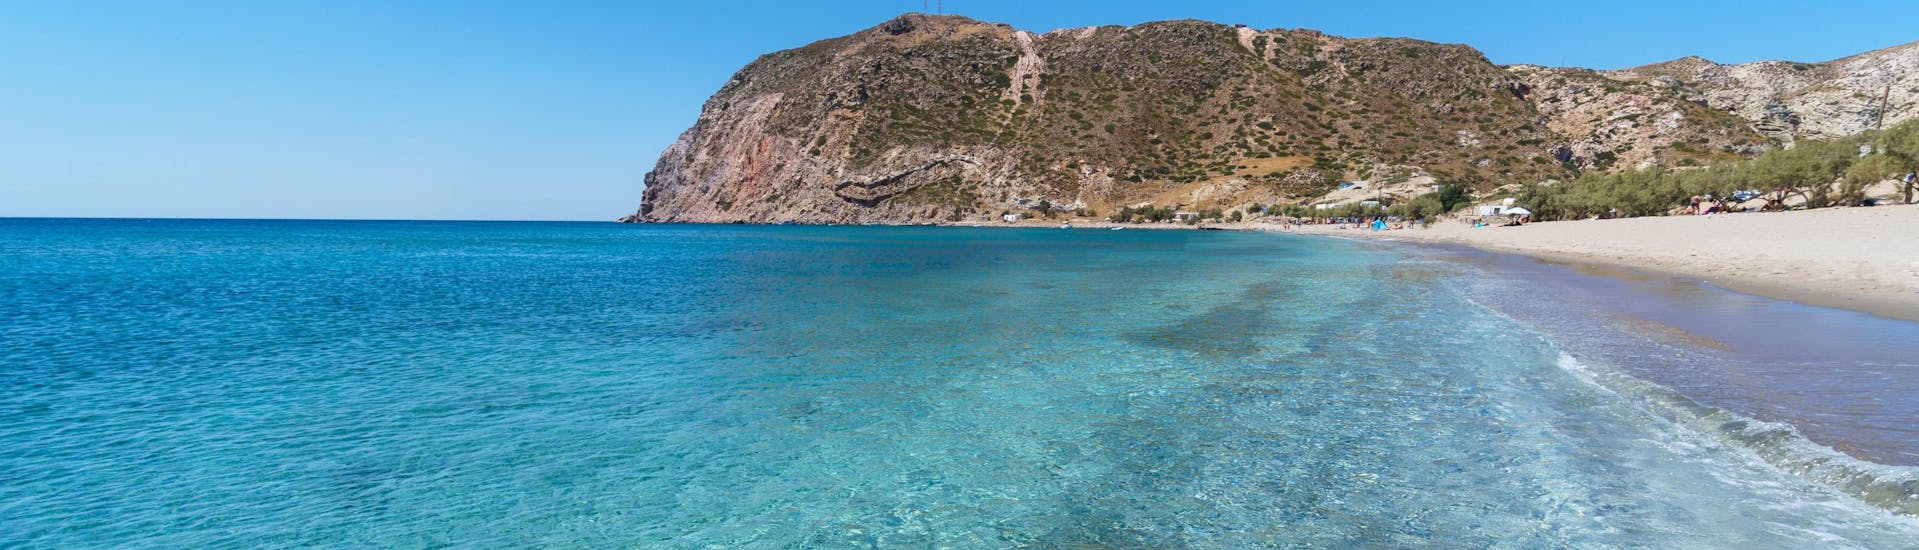 Uitzicht over het strand van Agia Kiriaki, een prachtige locatie om te bezoeken tijdens een boottocht op Milos.